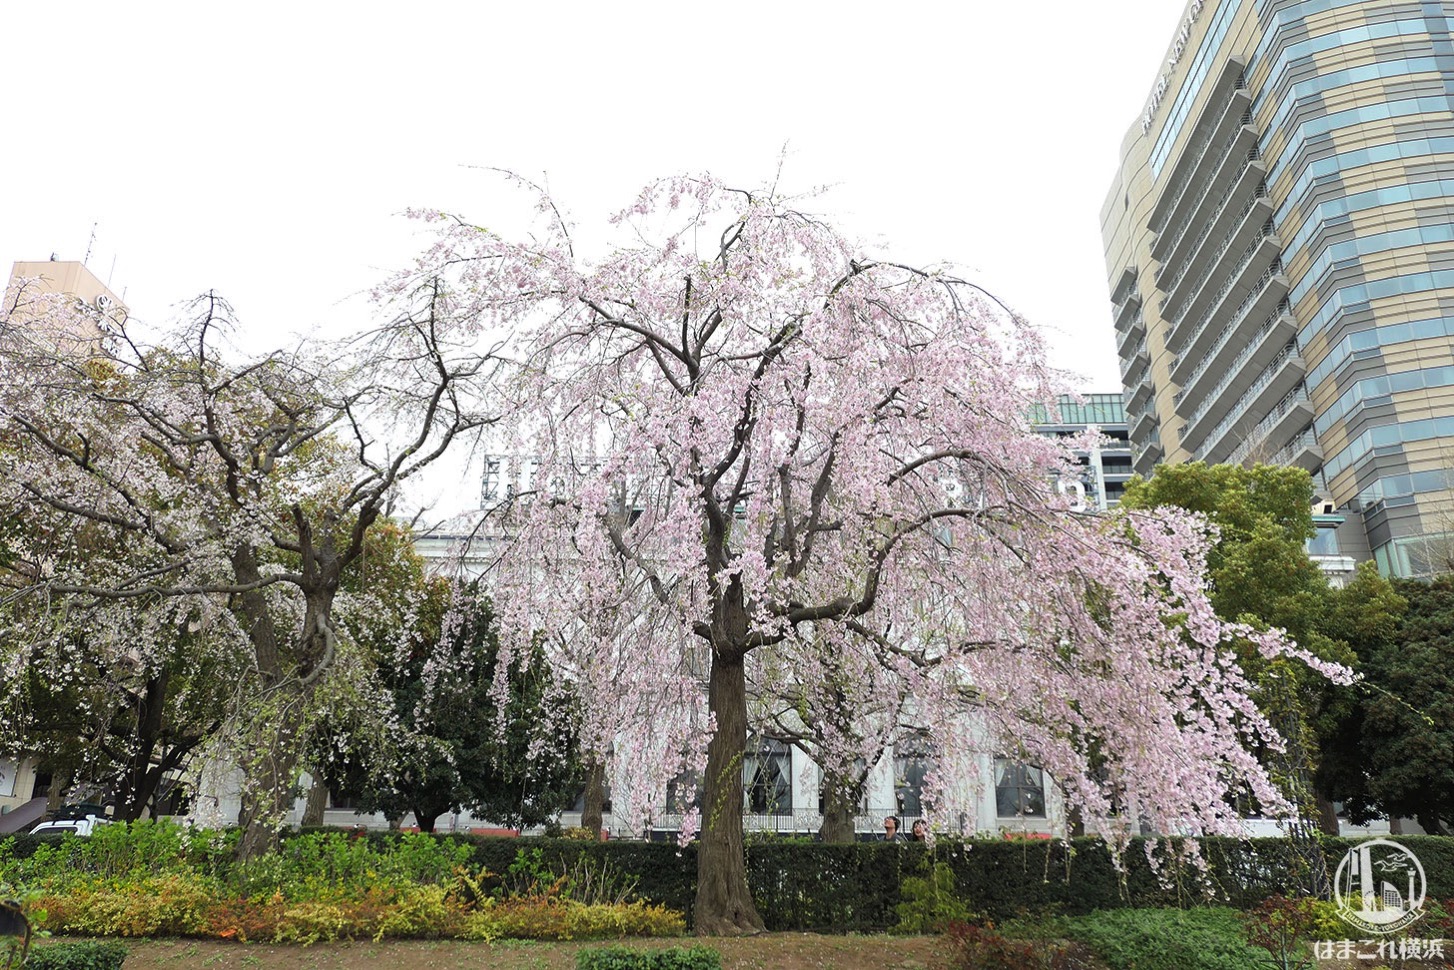 山下公園 しだれ桜 2019年 隣の桜の木は見頃終える